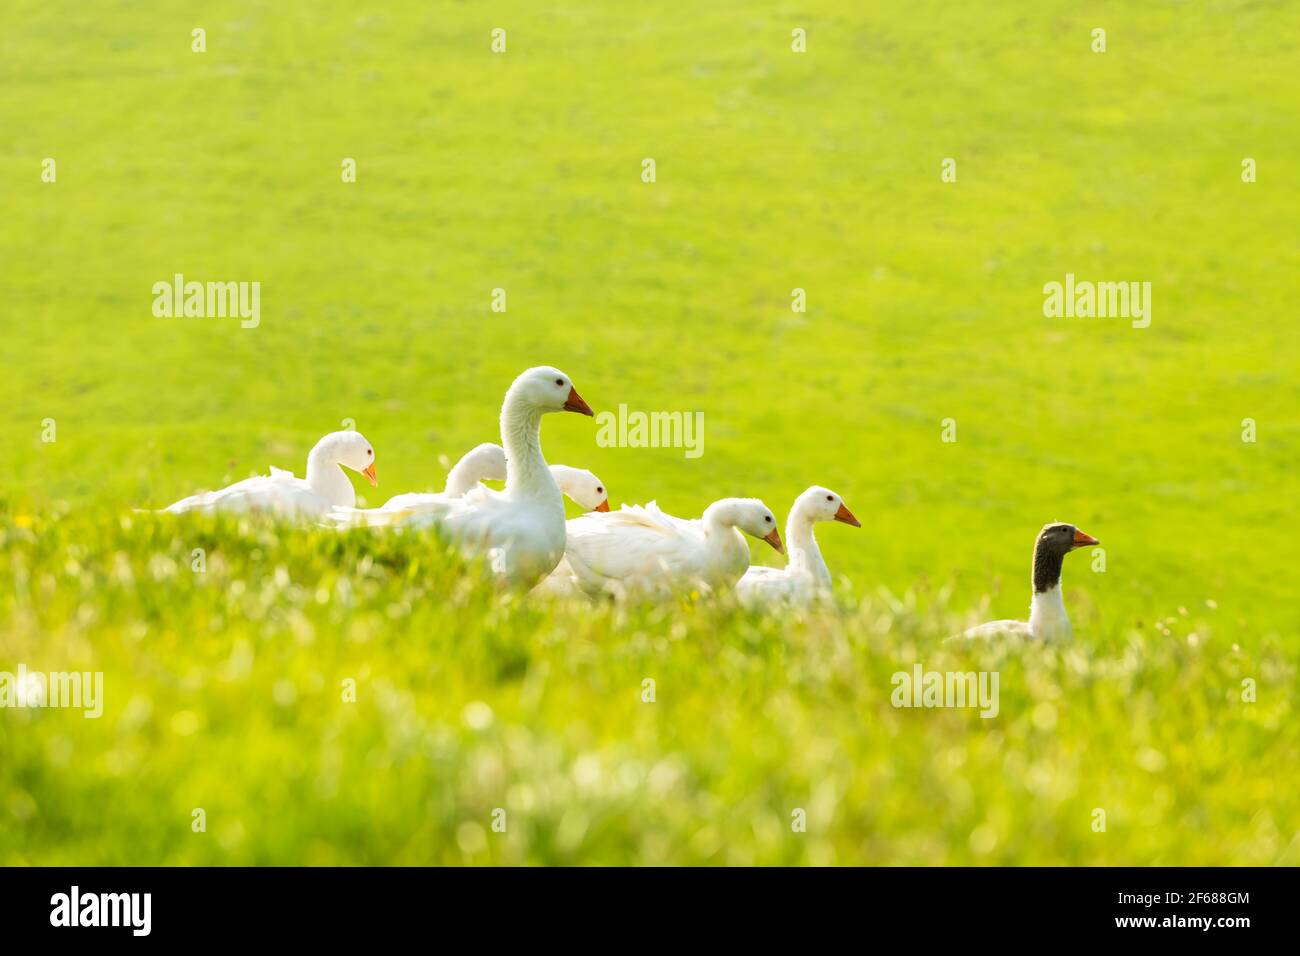 Oies domestiques blanches et grises dans l'herbe verte Banque D'Images